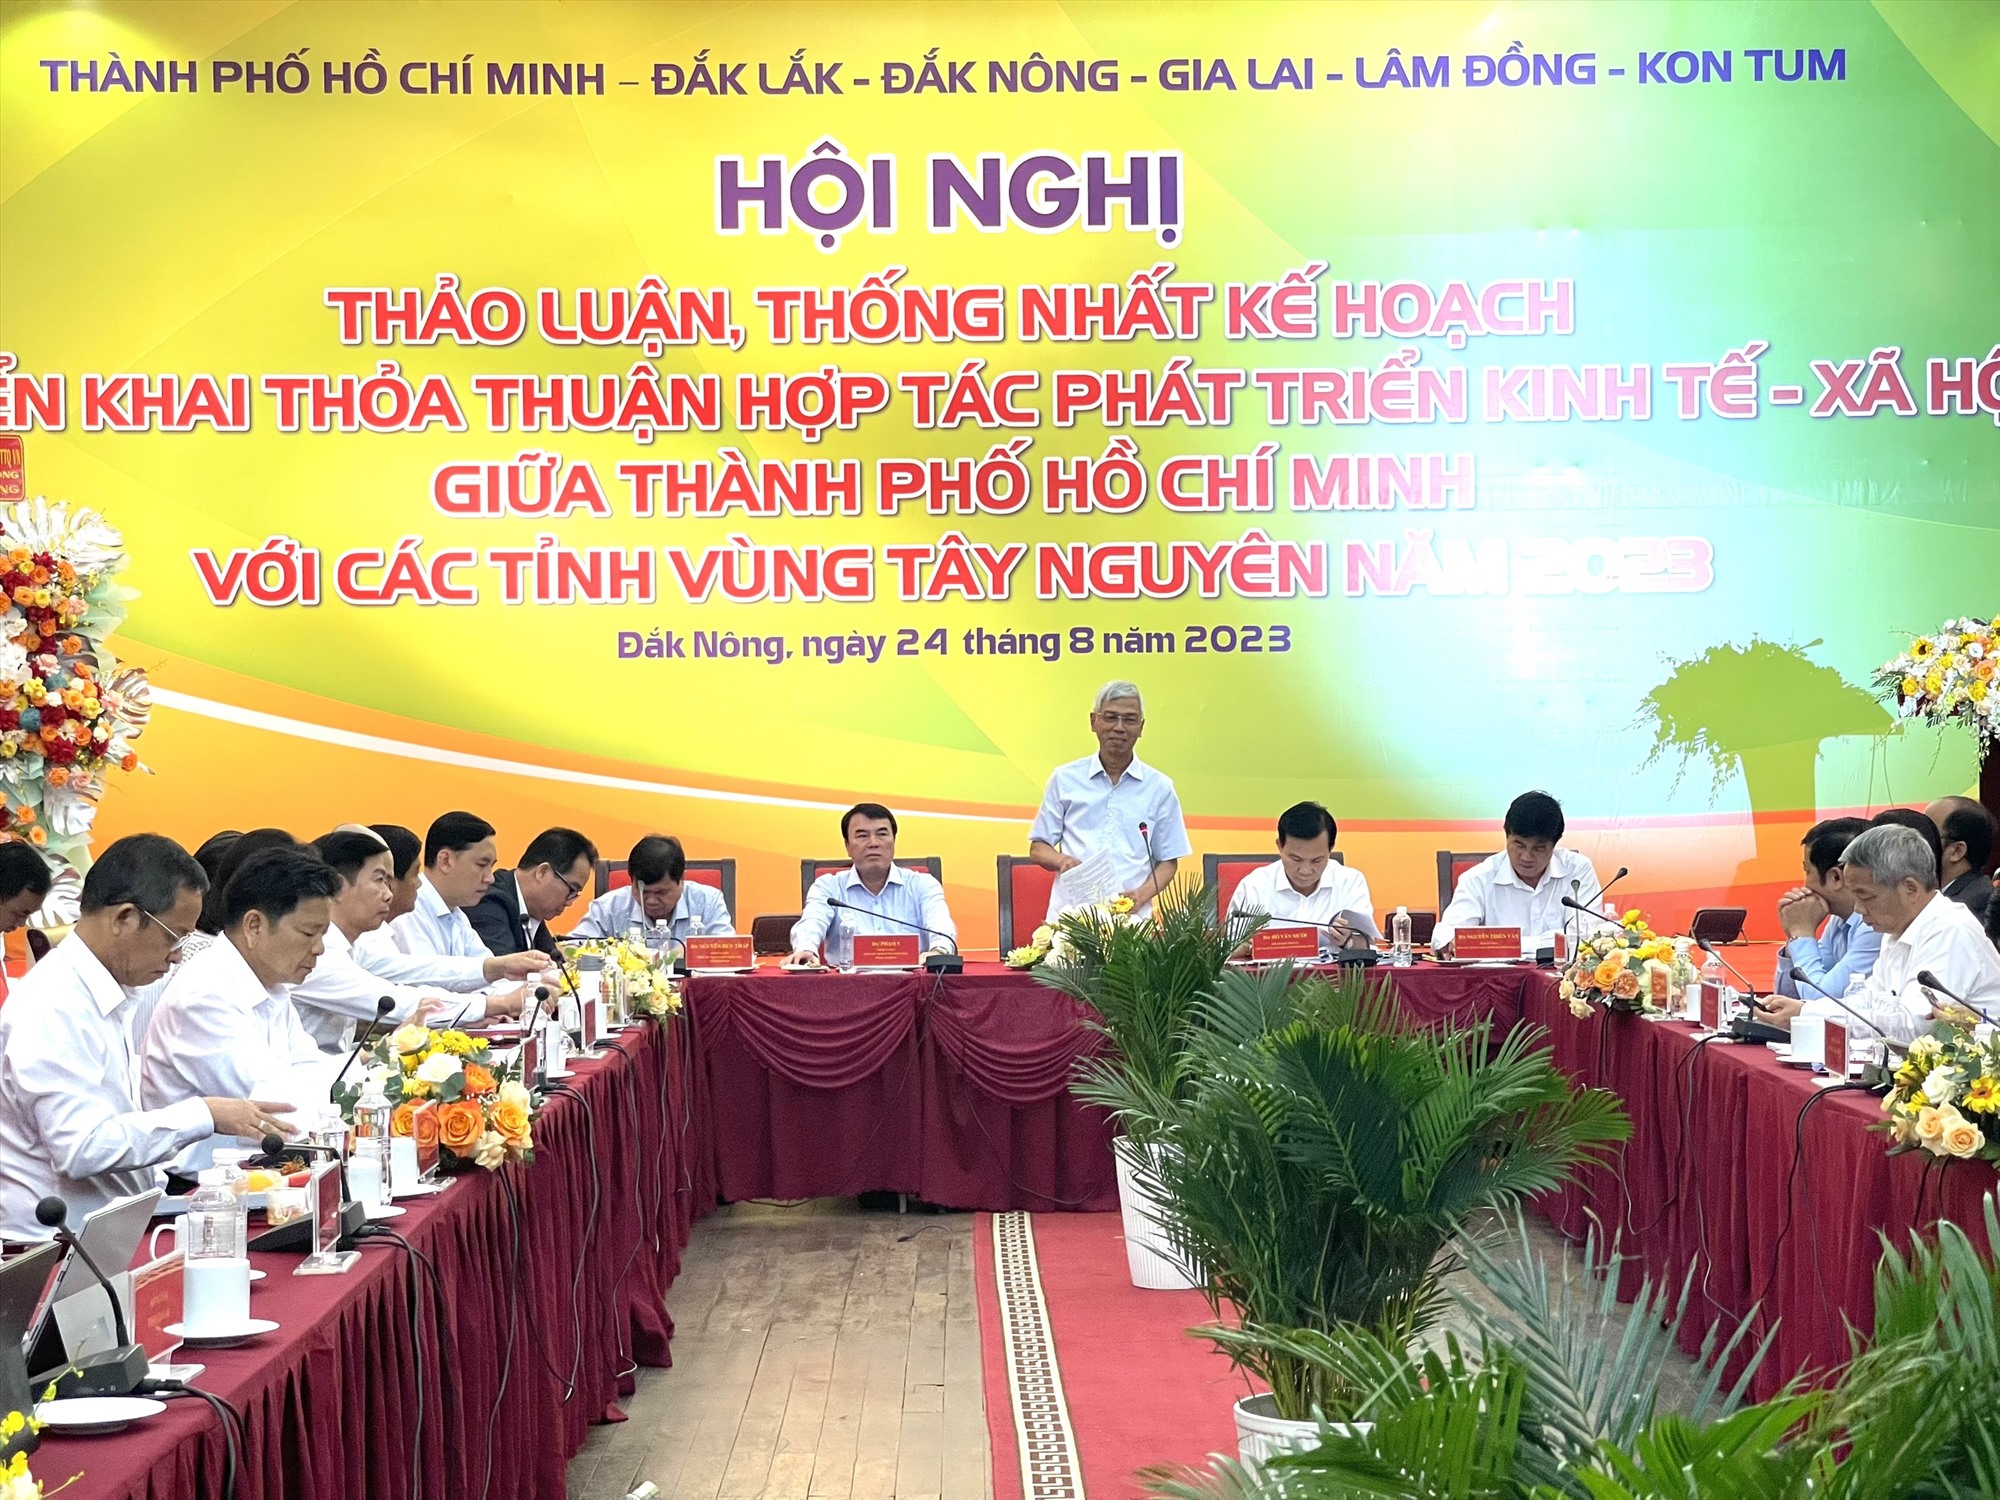 Hội nghị thảo luận, thống nhất kế hoạch triển khai thỏa thuận hợp tác phát triển kinh tế - xã hội giữa TP Hồ Chí Minh với các tỉnh vùng Tây Nguyên. Ảnh: Mai Hương